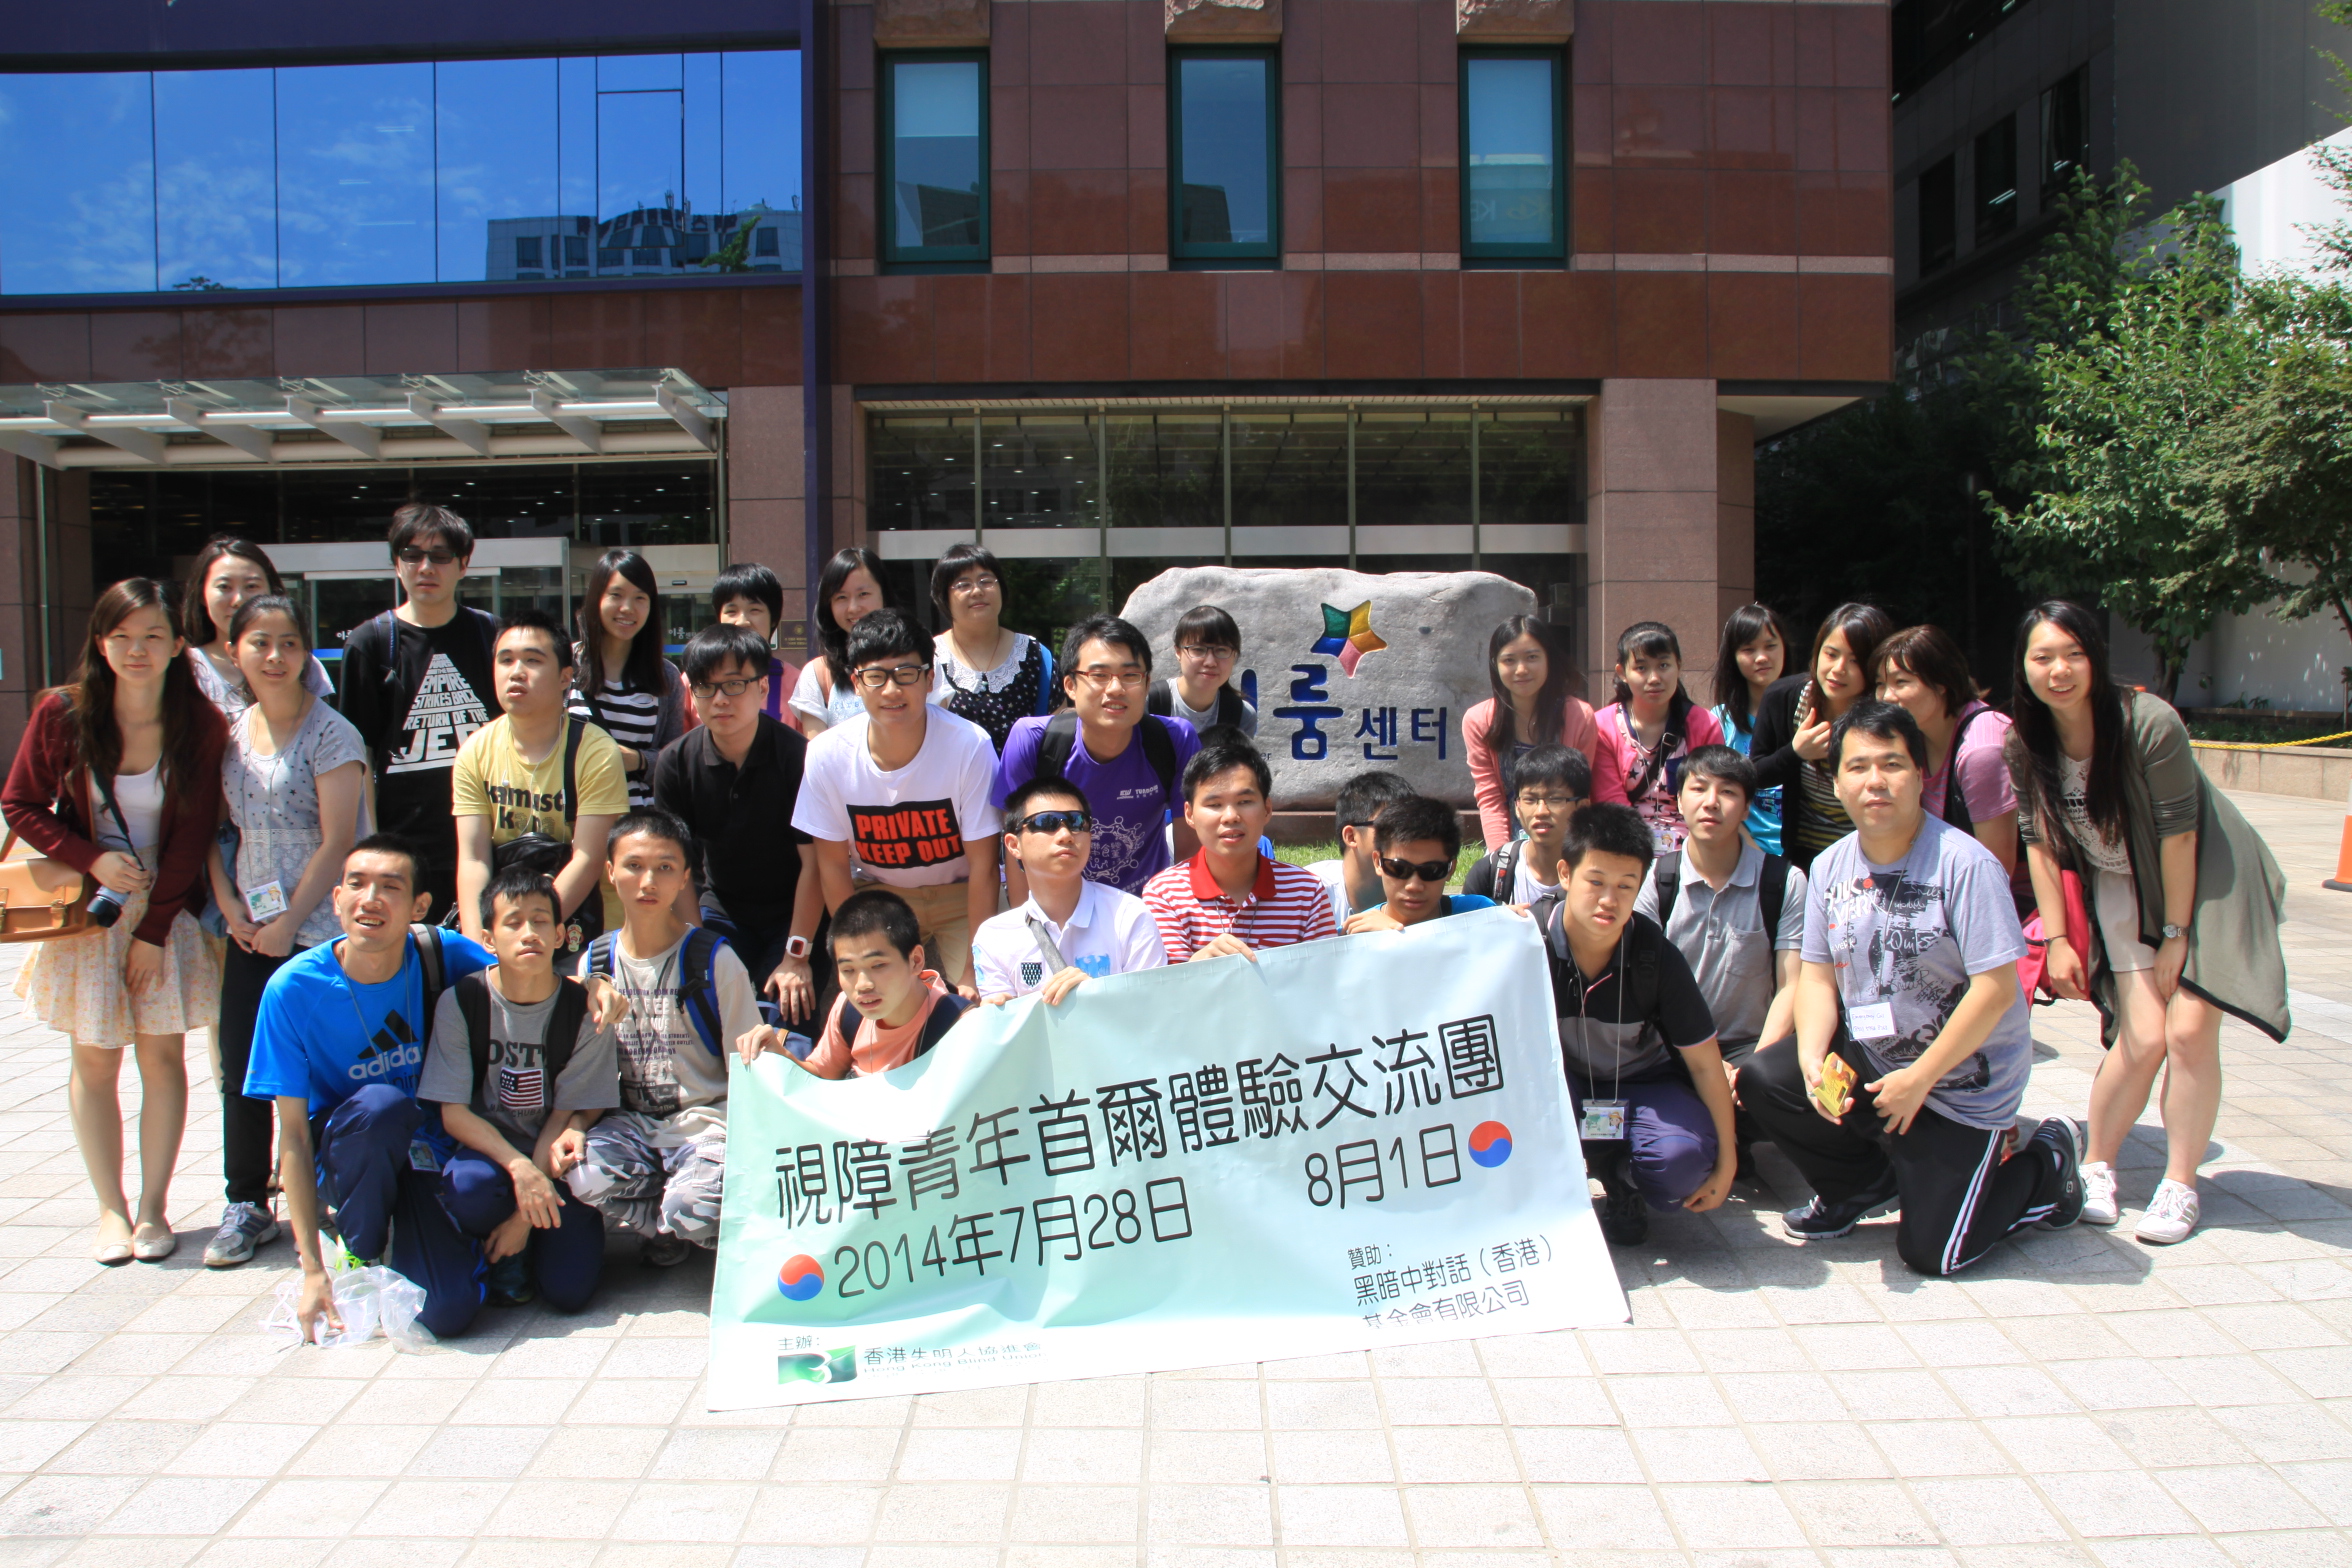 이룸센터 앞에서 홍콩시각장애청소년 단체사진